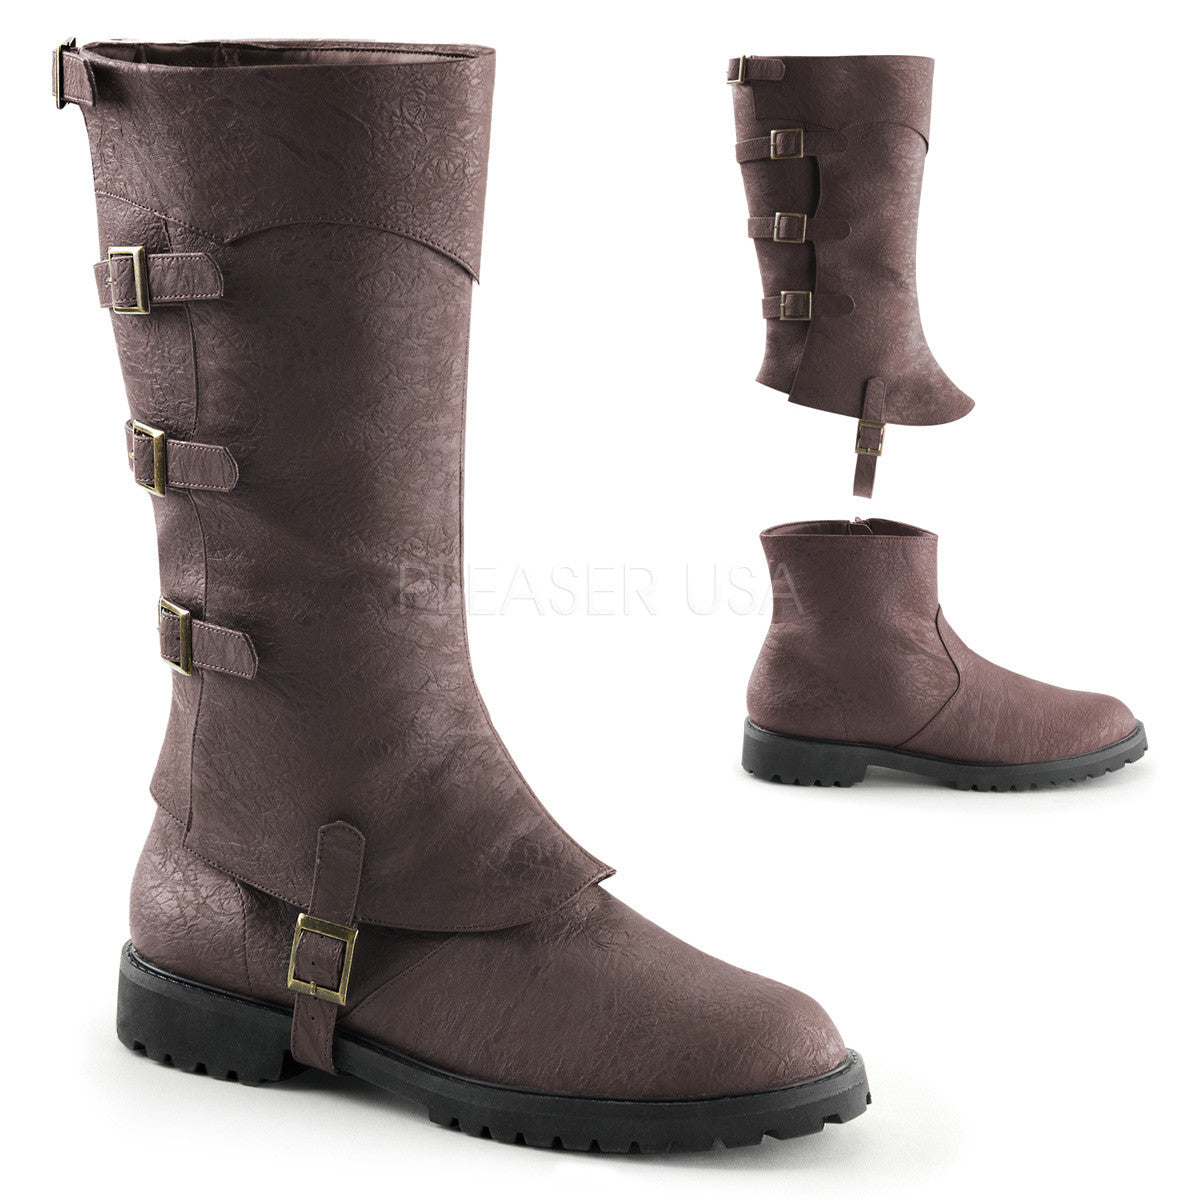 Men's Brown Renaissance Medieval Pirate Boots - Shoecup.com - 1